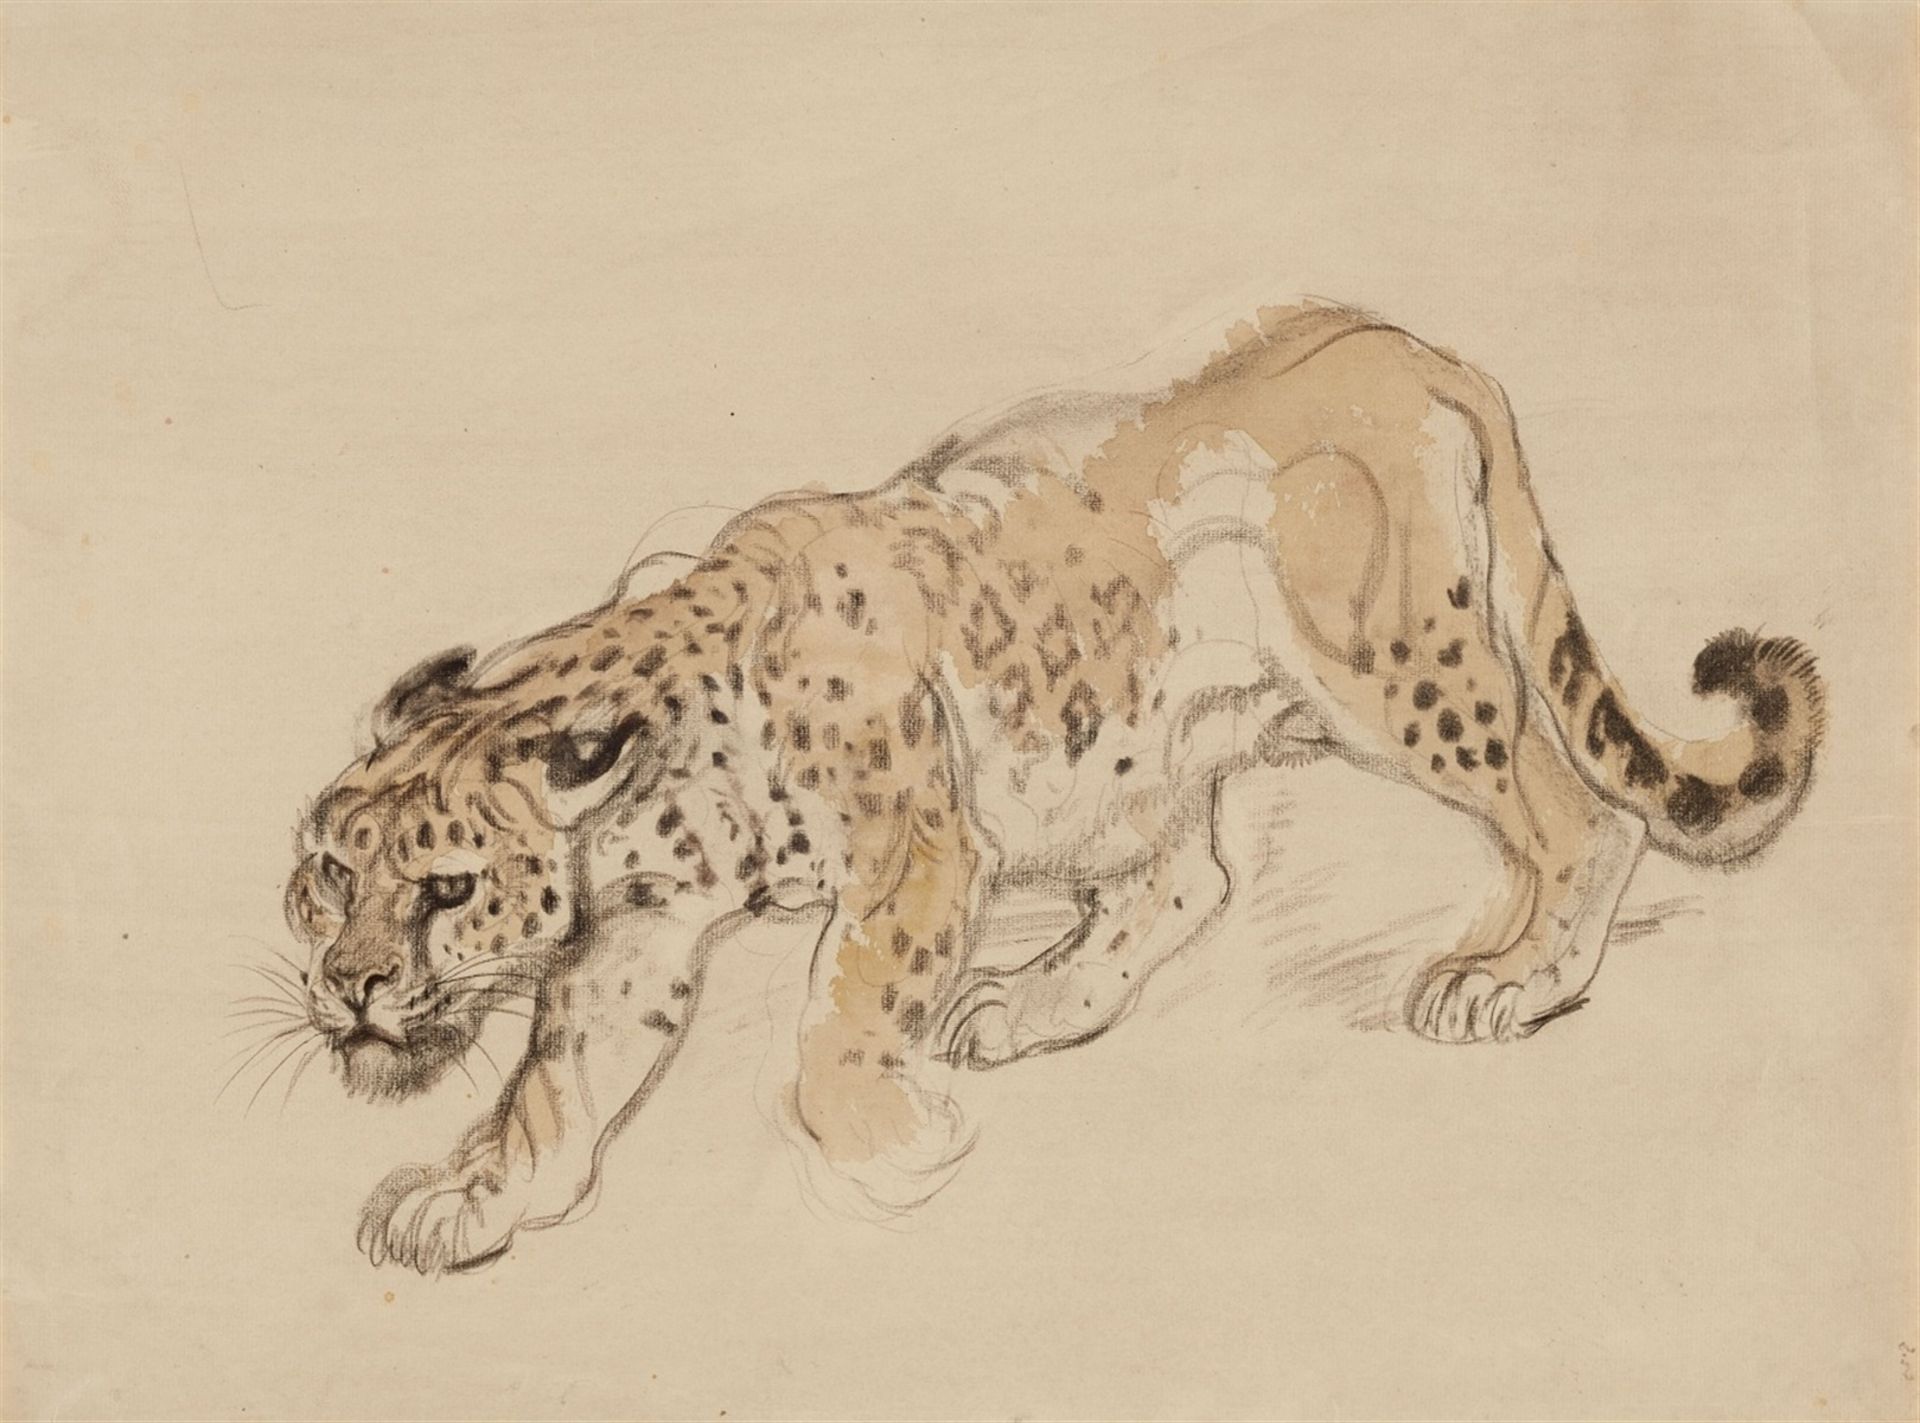 Schleichender LeopardAquarell über Kohle auf Papier. Monogrammiert unten rechts lhj. 35,5 x 47,5 cm.